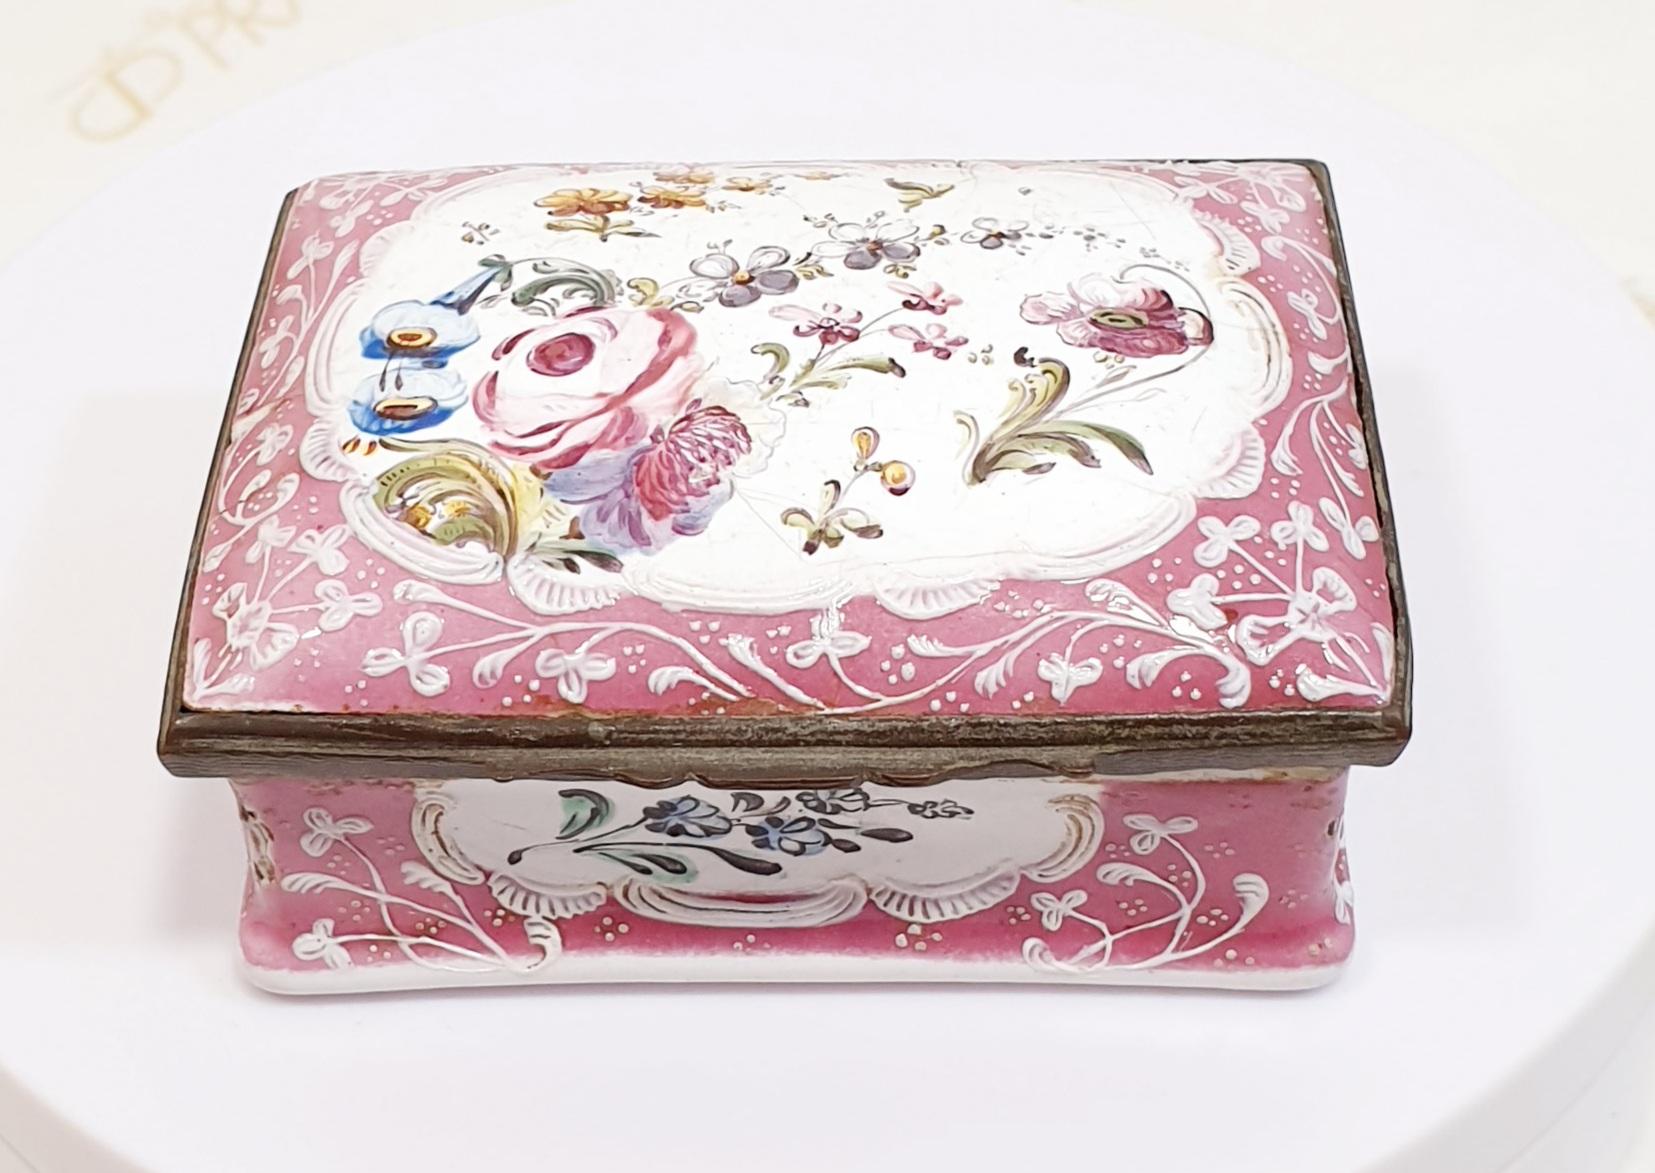 Antike 19. Schmuck Antike 19. Schmuck Hand gemalt rosa Porzellan-Box mit Blumen aprox 1880 
Perfektes Geschenk zur Dekoration oder zur Aufbewahrung persönlicher und wertvoller Gegenstände
Teil einer Sammlung von sechs 

PRADERA ist ein in